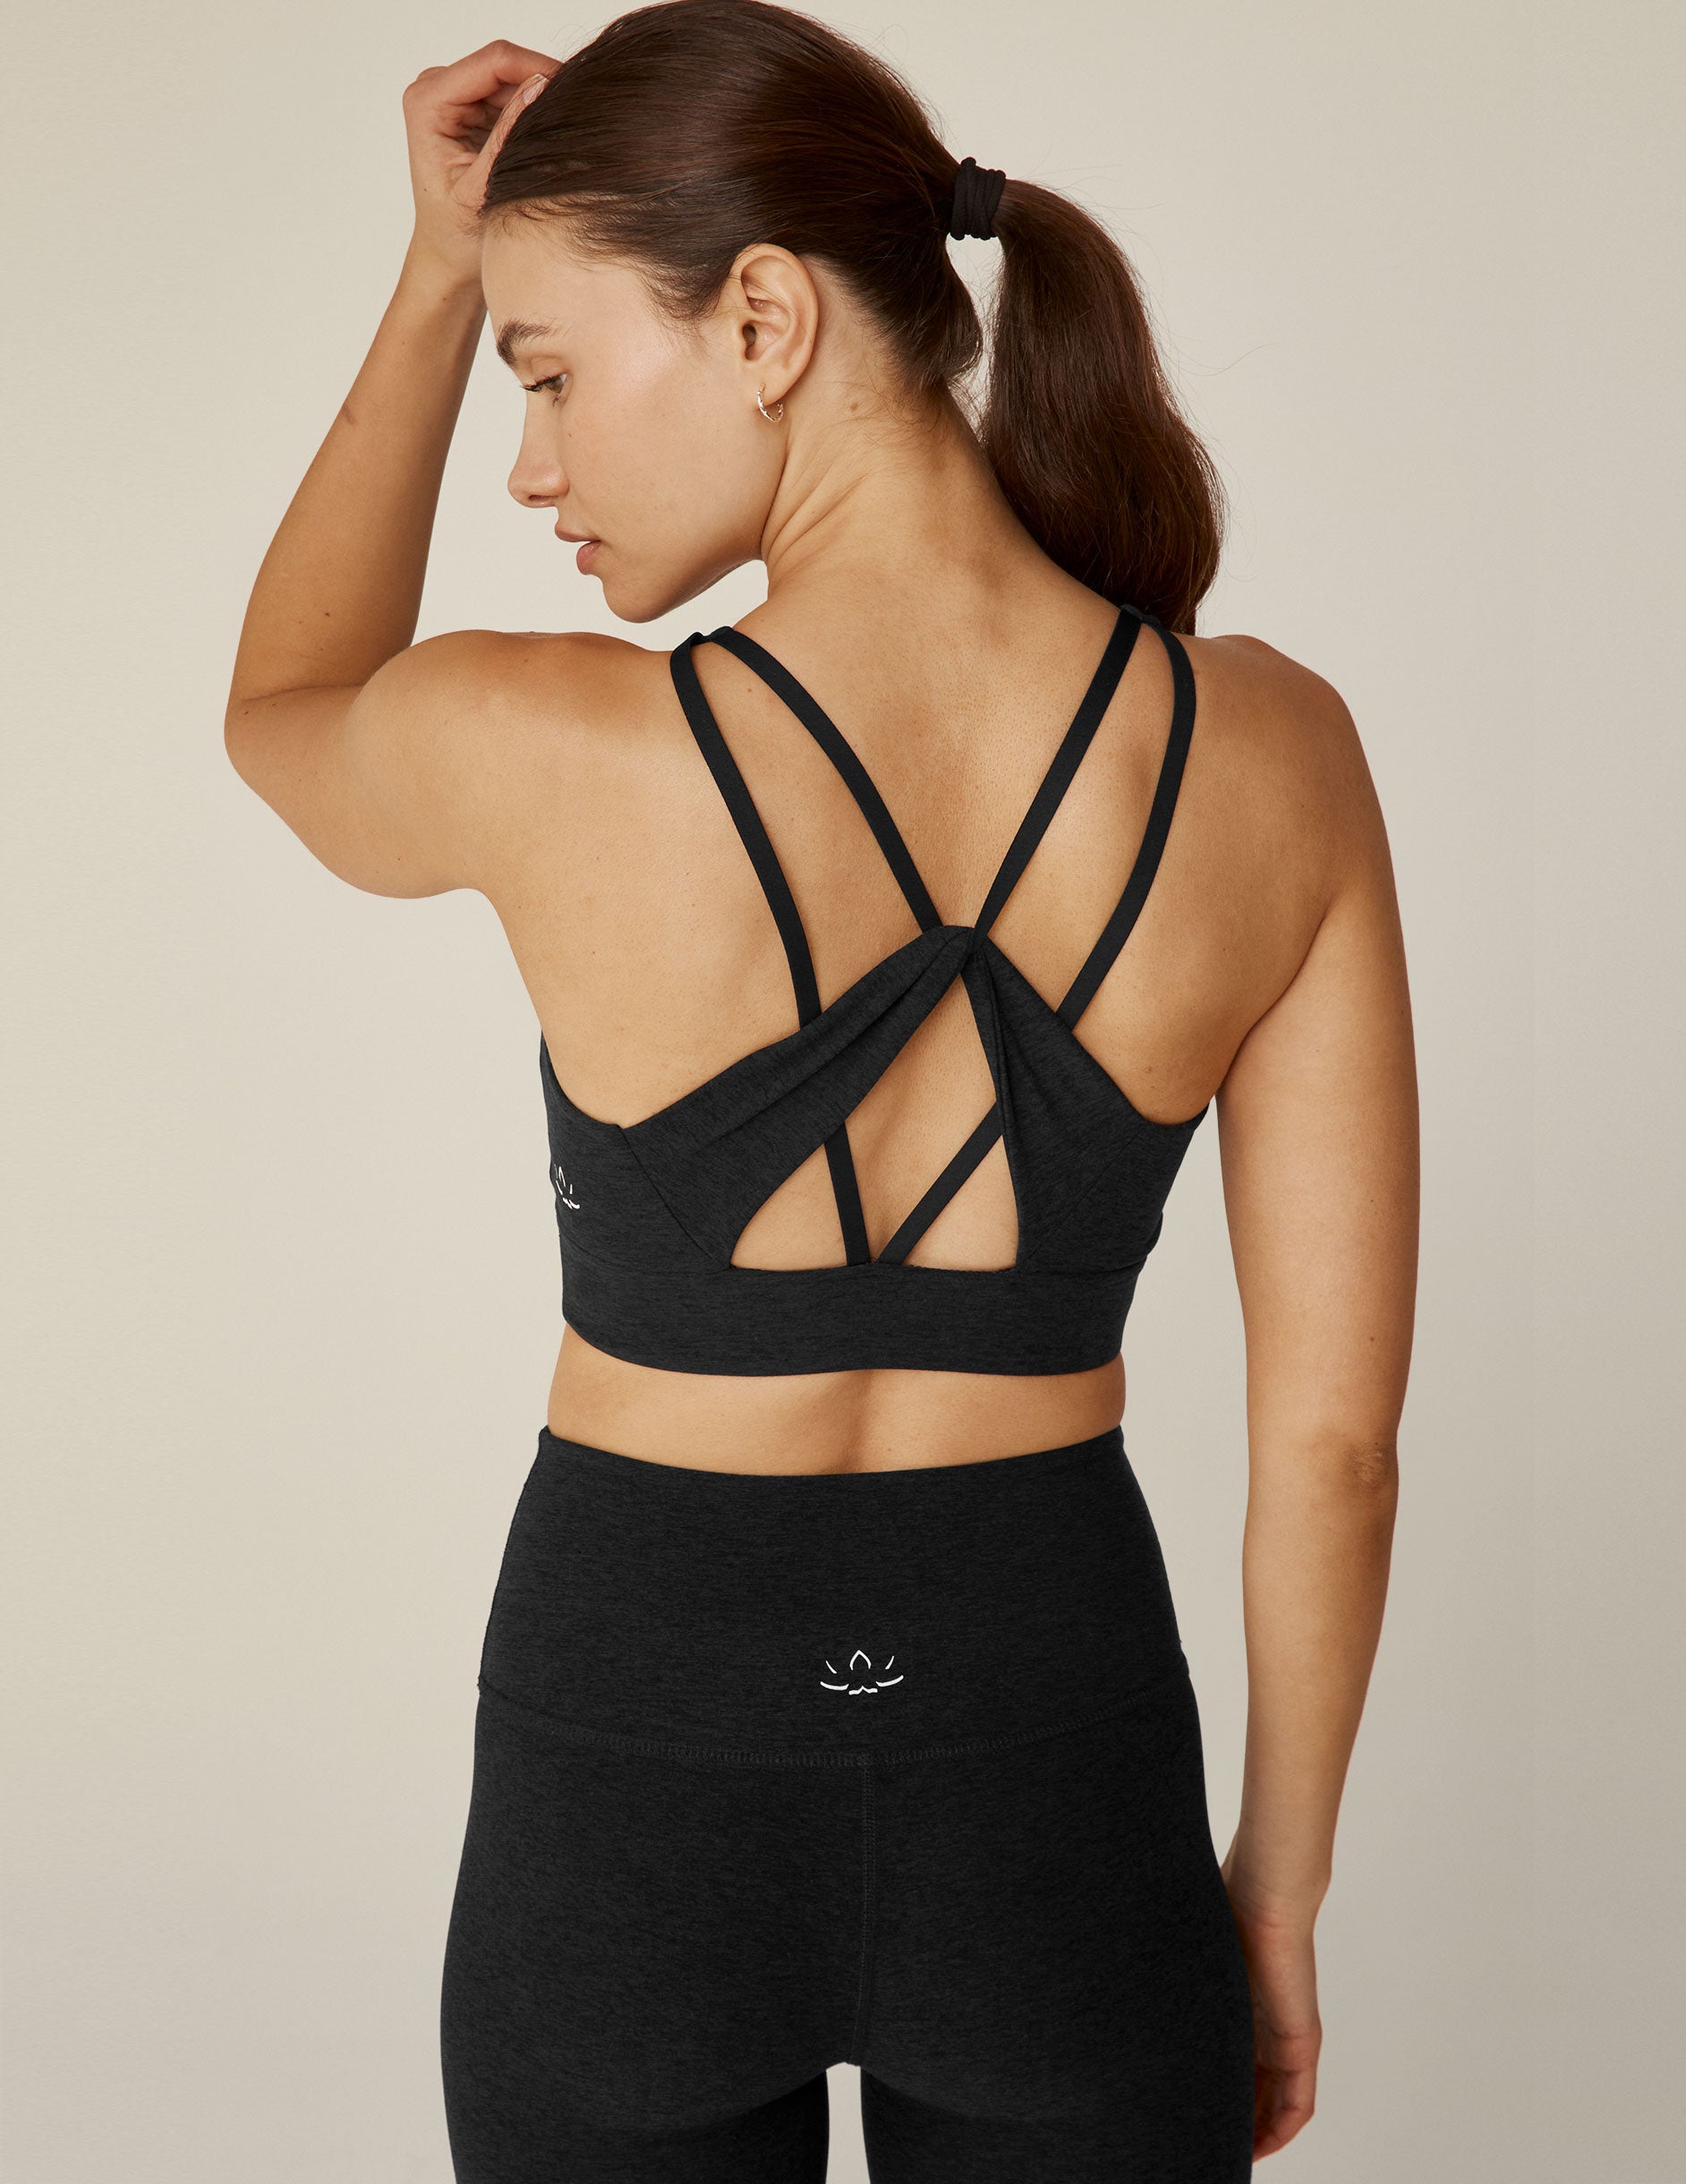 $64 Beyond Yoga Women's Orange Printed Open-Back Sports Bra Size